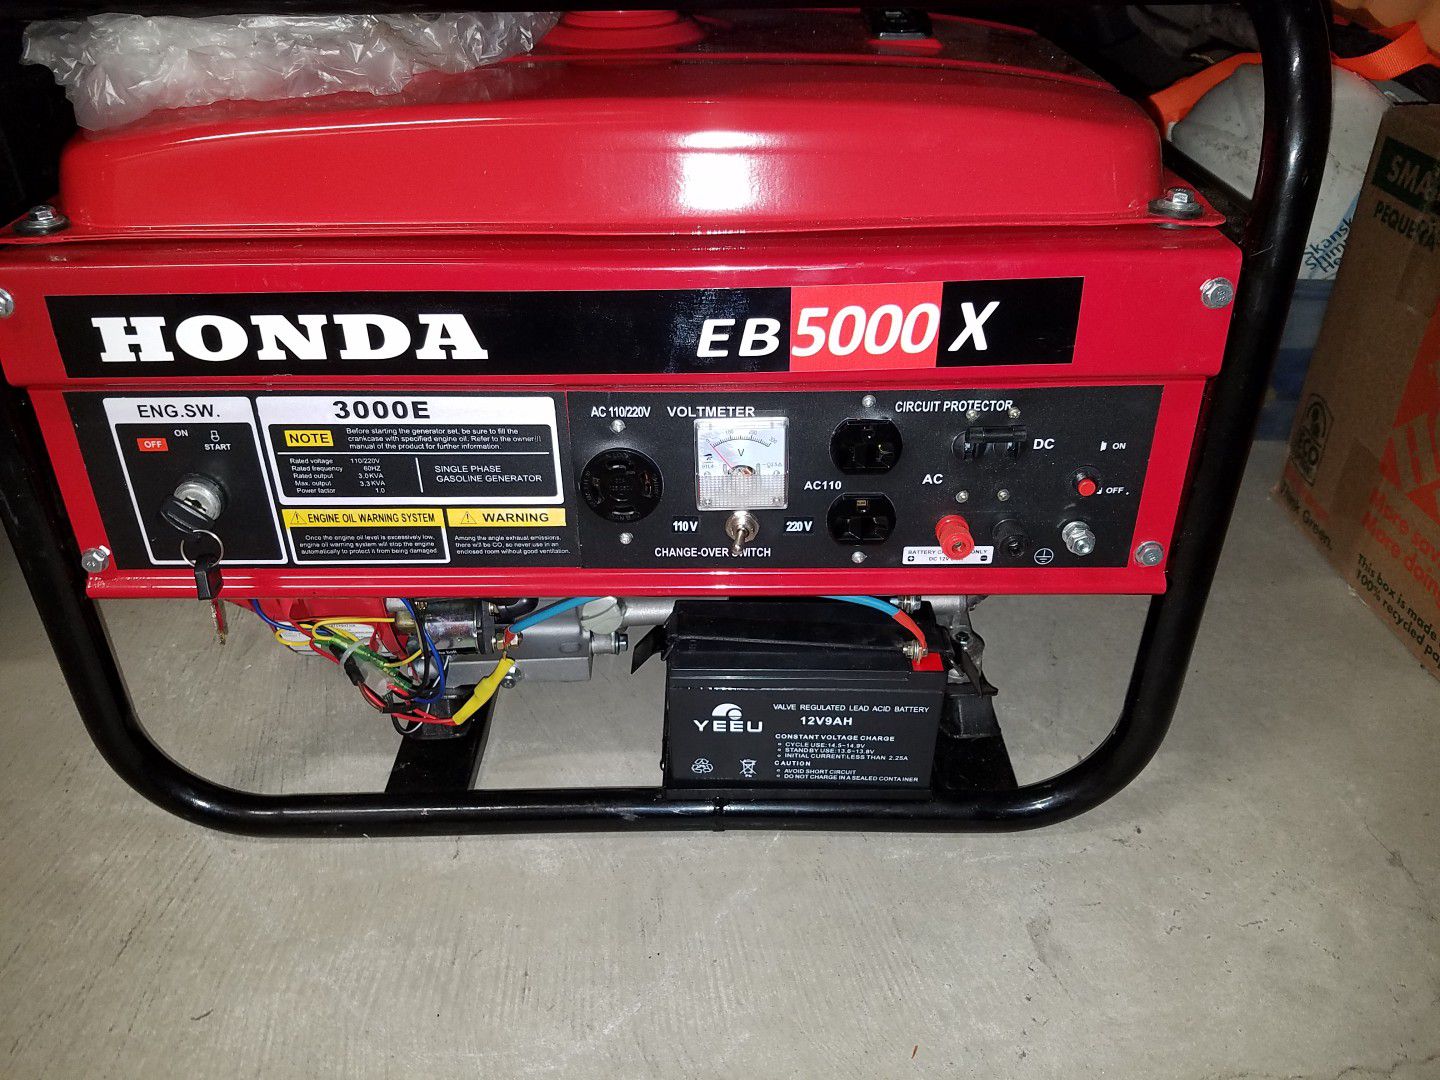 Honda5000ebx generator